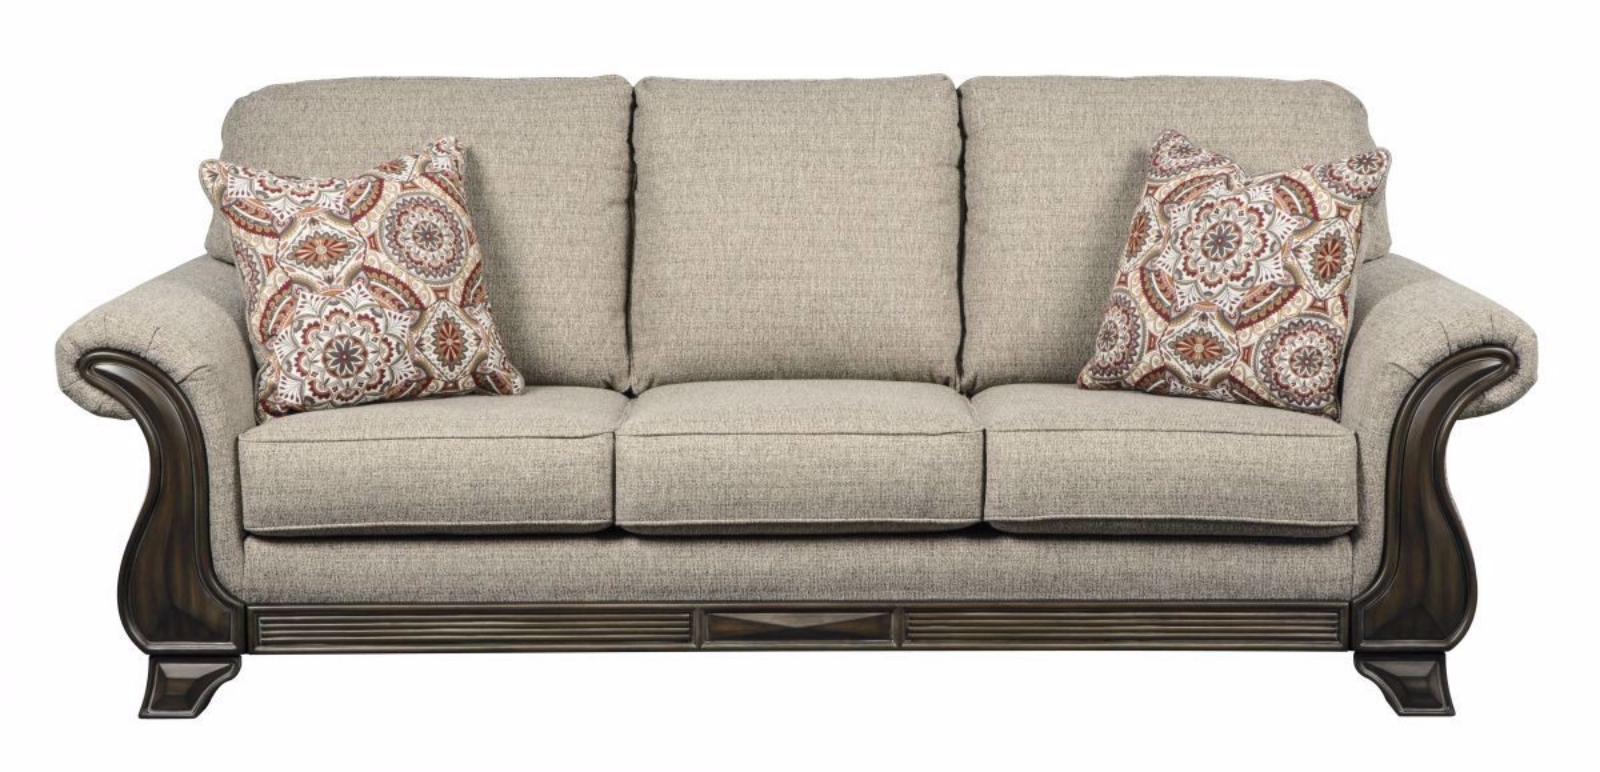 Picture of Claremorris Sofa